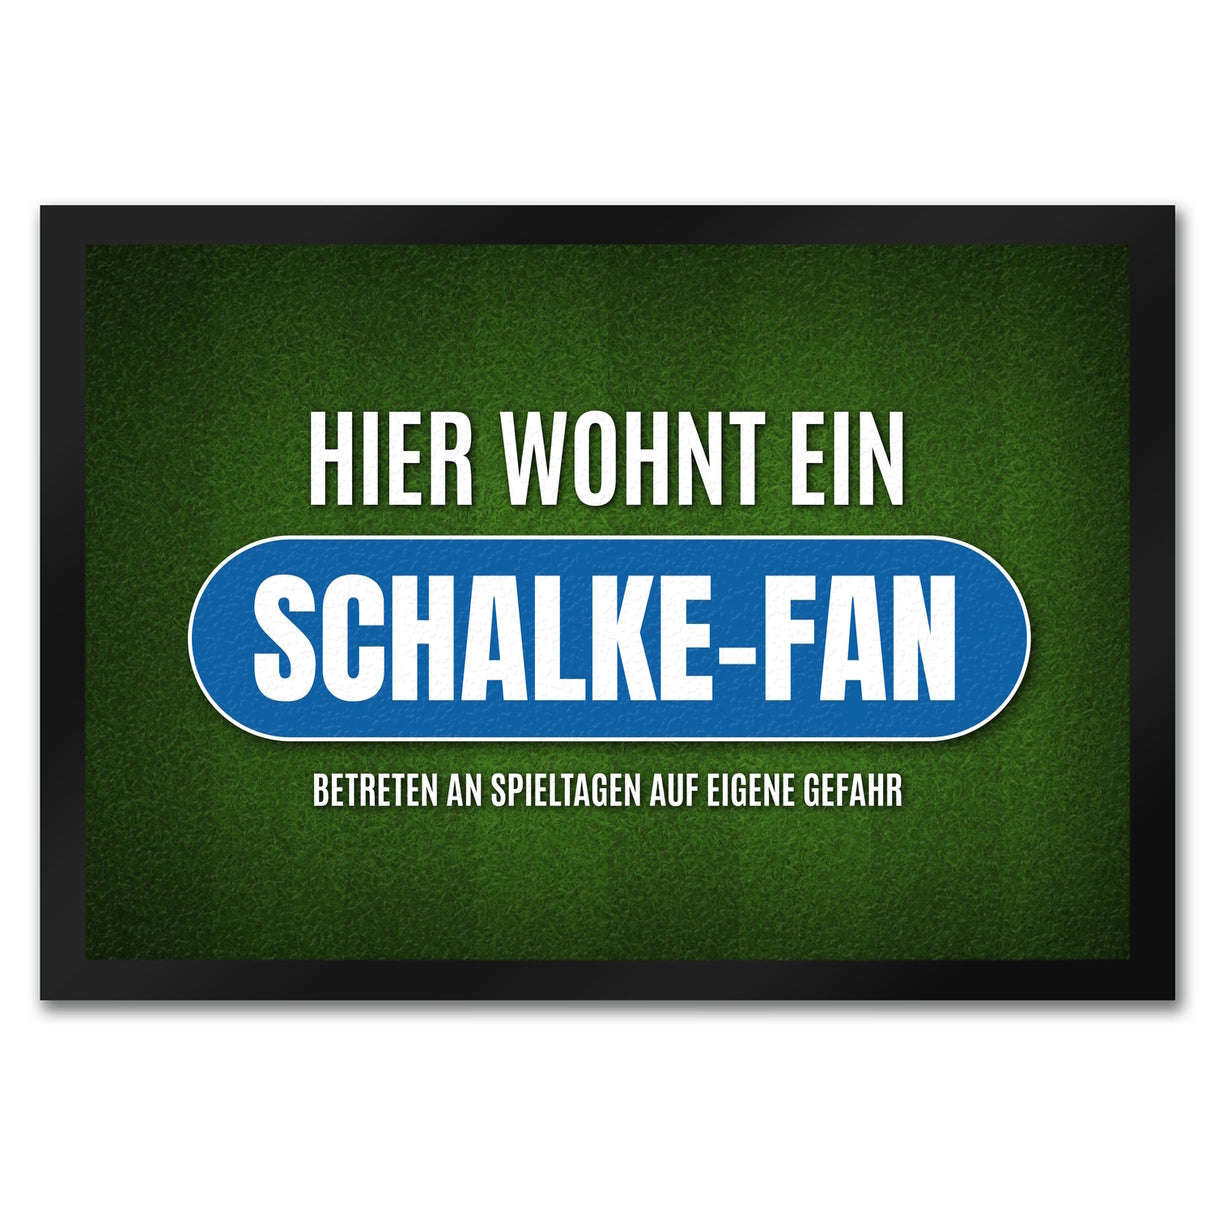 Hier wohnt ein Schalke-Fan Fußmatte mit Rasen Motiv